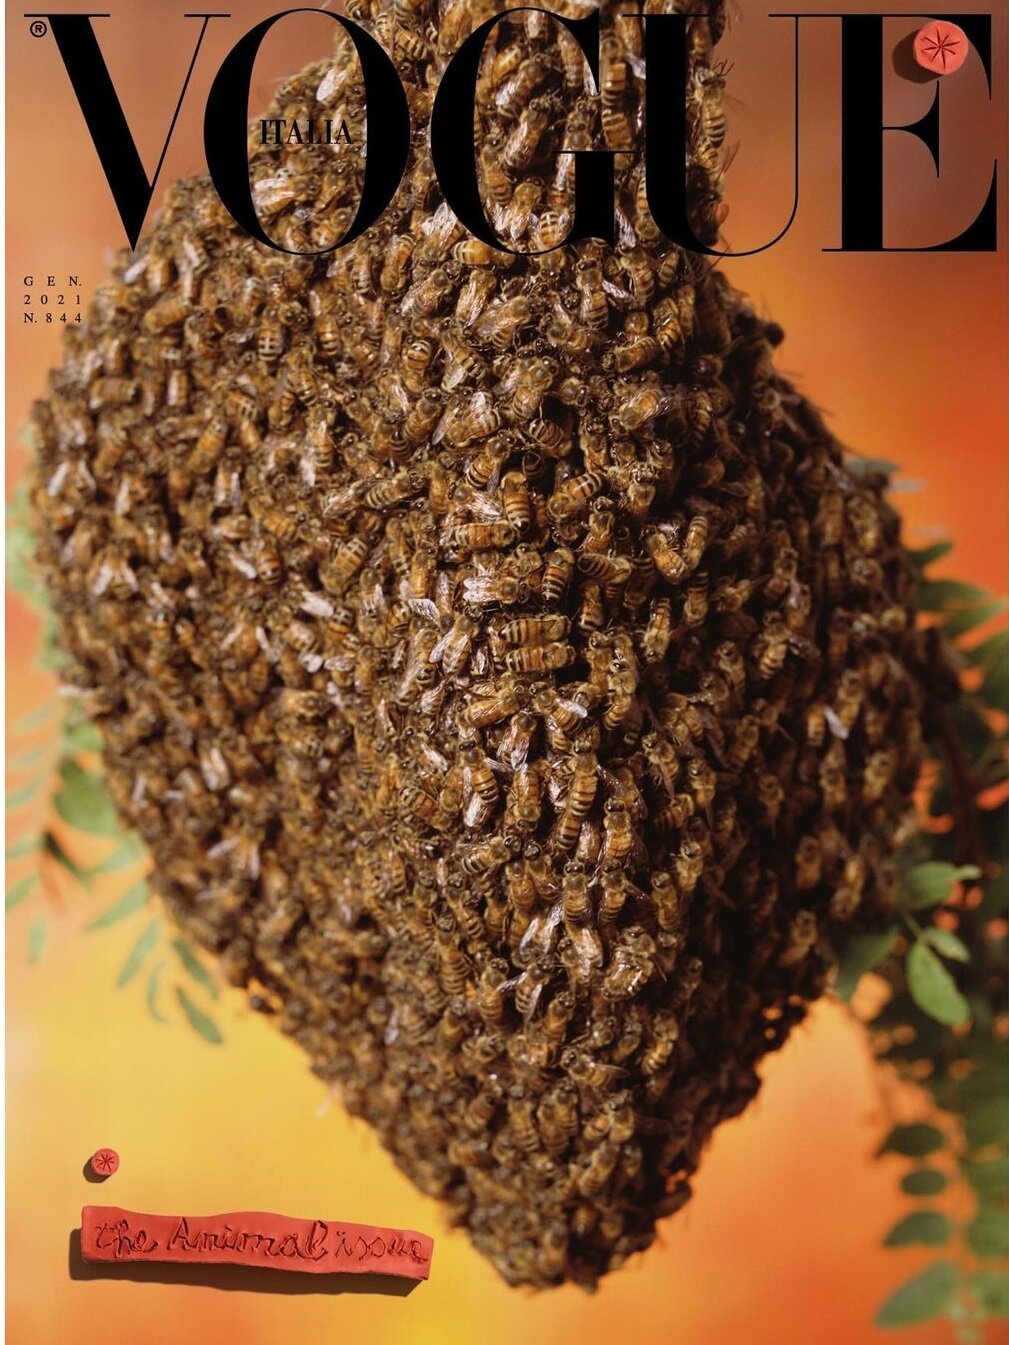 Vogue Italia cũng mang cả côn trùng lên trên bìa tạp chí. Một thông điệp về bảo vệ thiên nhiên và quyền động vật đầy thâm thúy từ Thánh kinh thời trang Ý